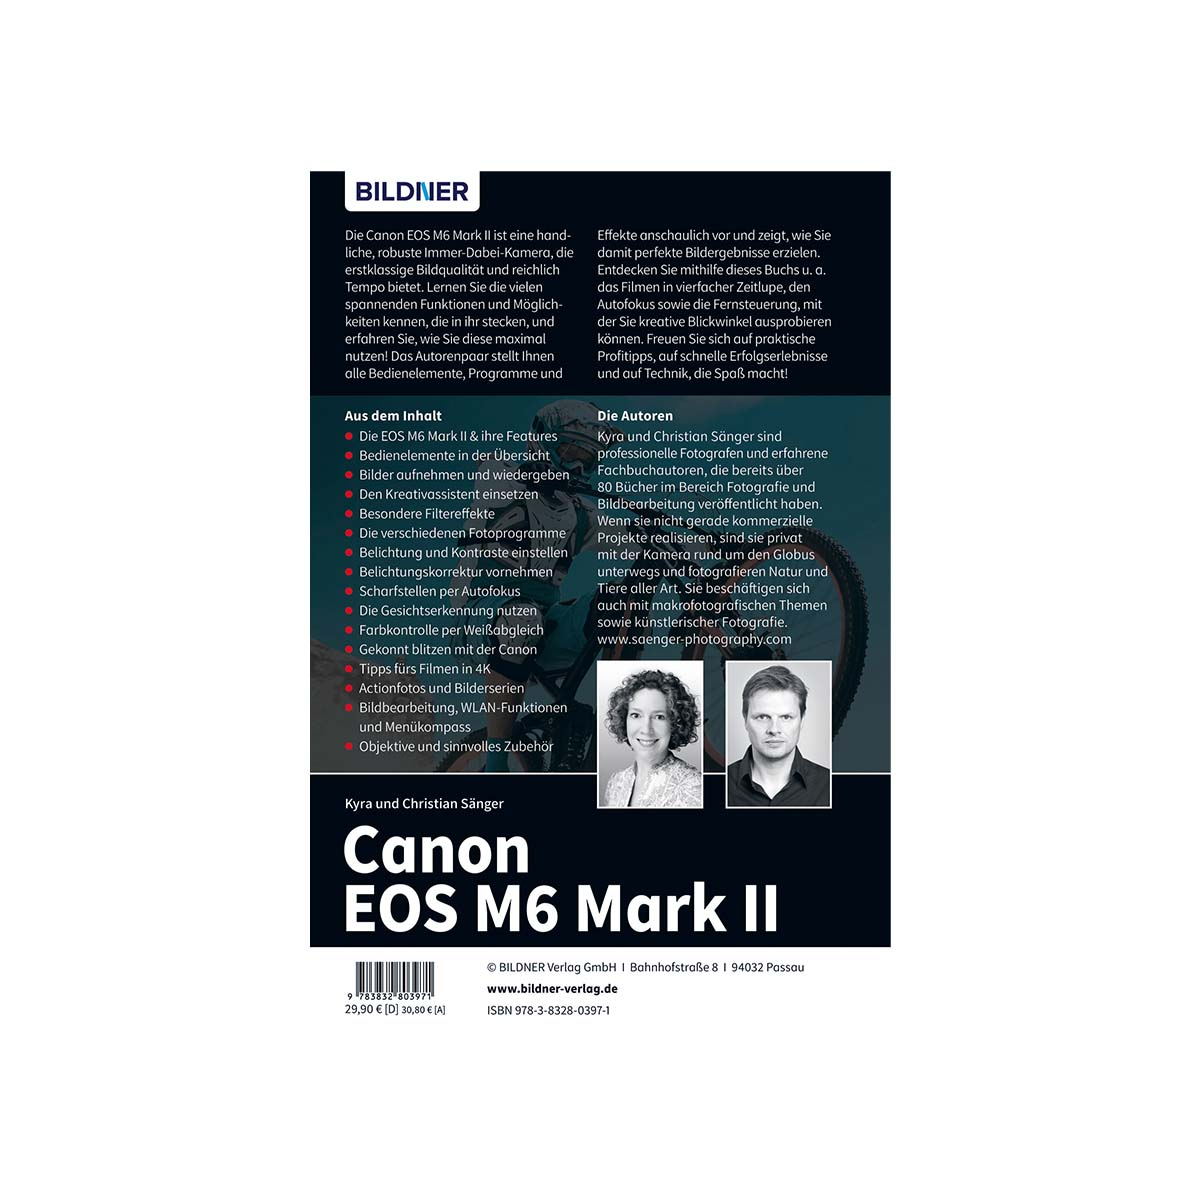 Canon EOS M6 Mark 2 - Kamera! Das Ihrer Praxisbuch zu umfangreiche